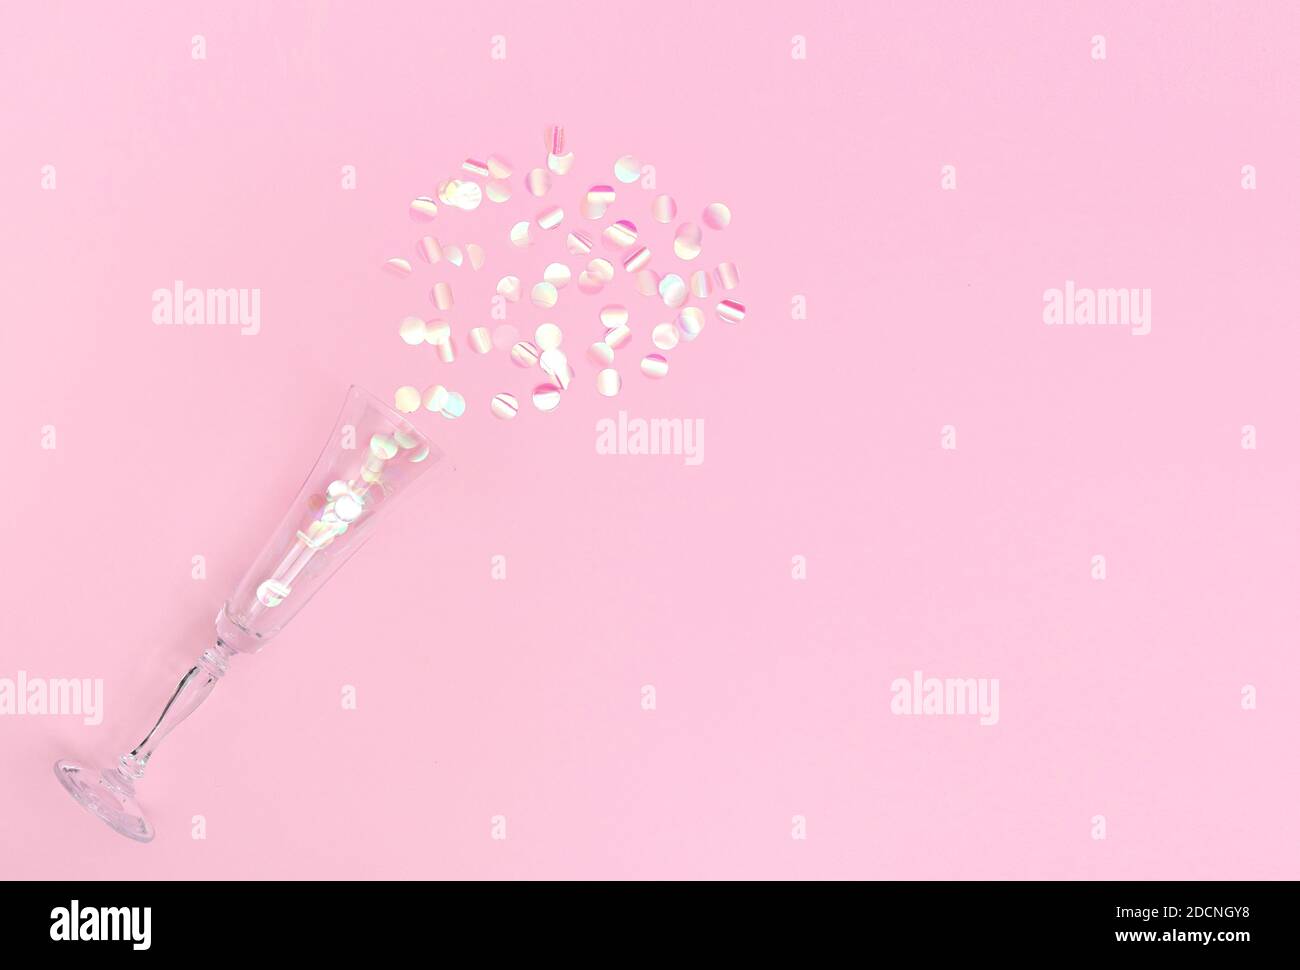 Сhampagne flauta llena de confeti rosados sobre fondo rosa. Espacio de copia, disposición plana Foto de stock